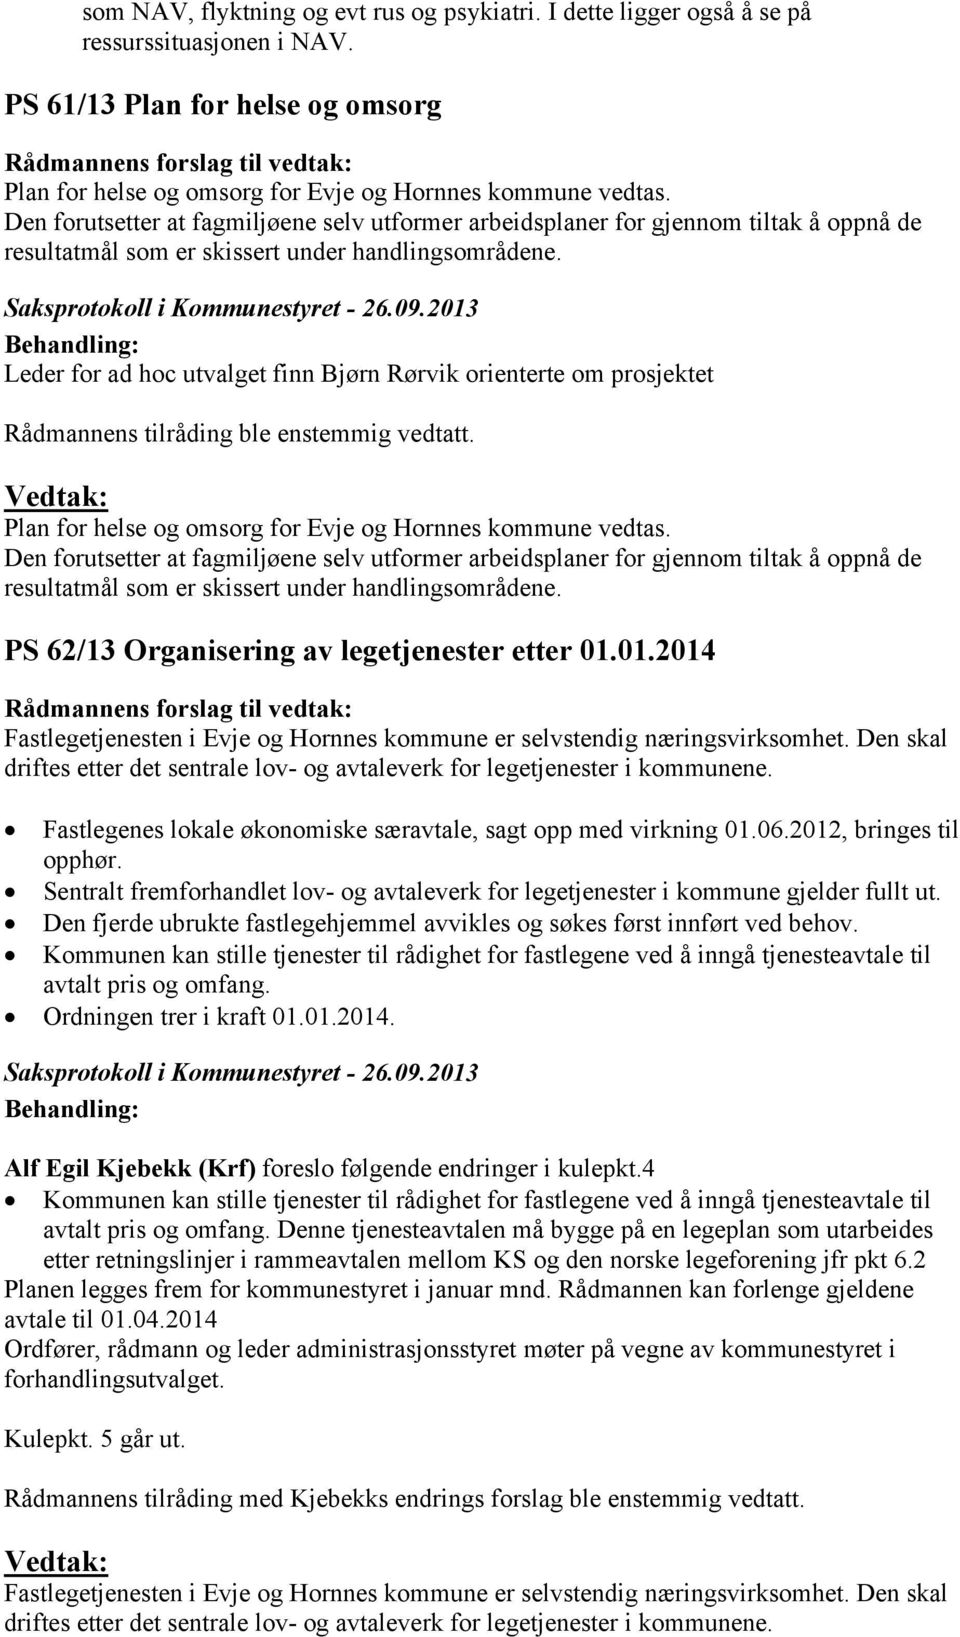 Leder for ad hoc utvalget finn Bjørn Rørvik orienterte om prosjektet Plan for helse og omsorg for Evje og Hornnes kommune vedtas.  PS 62/13 Organisering av legetjenester etter 01.